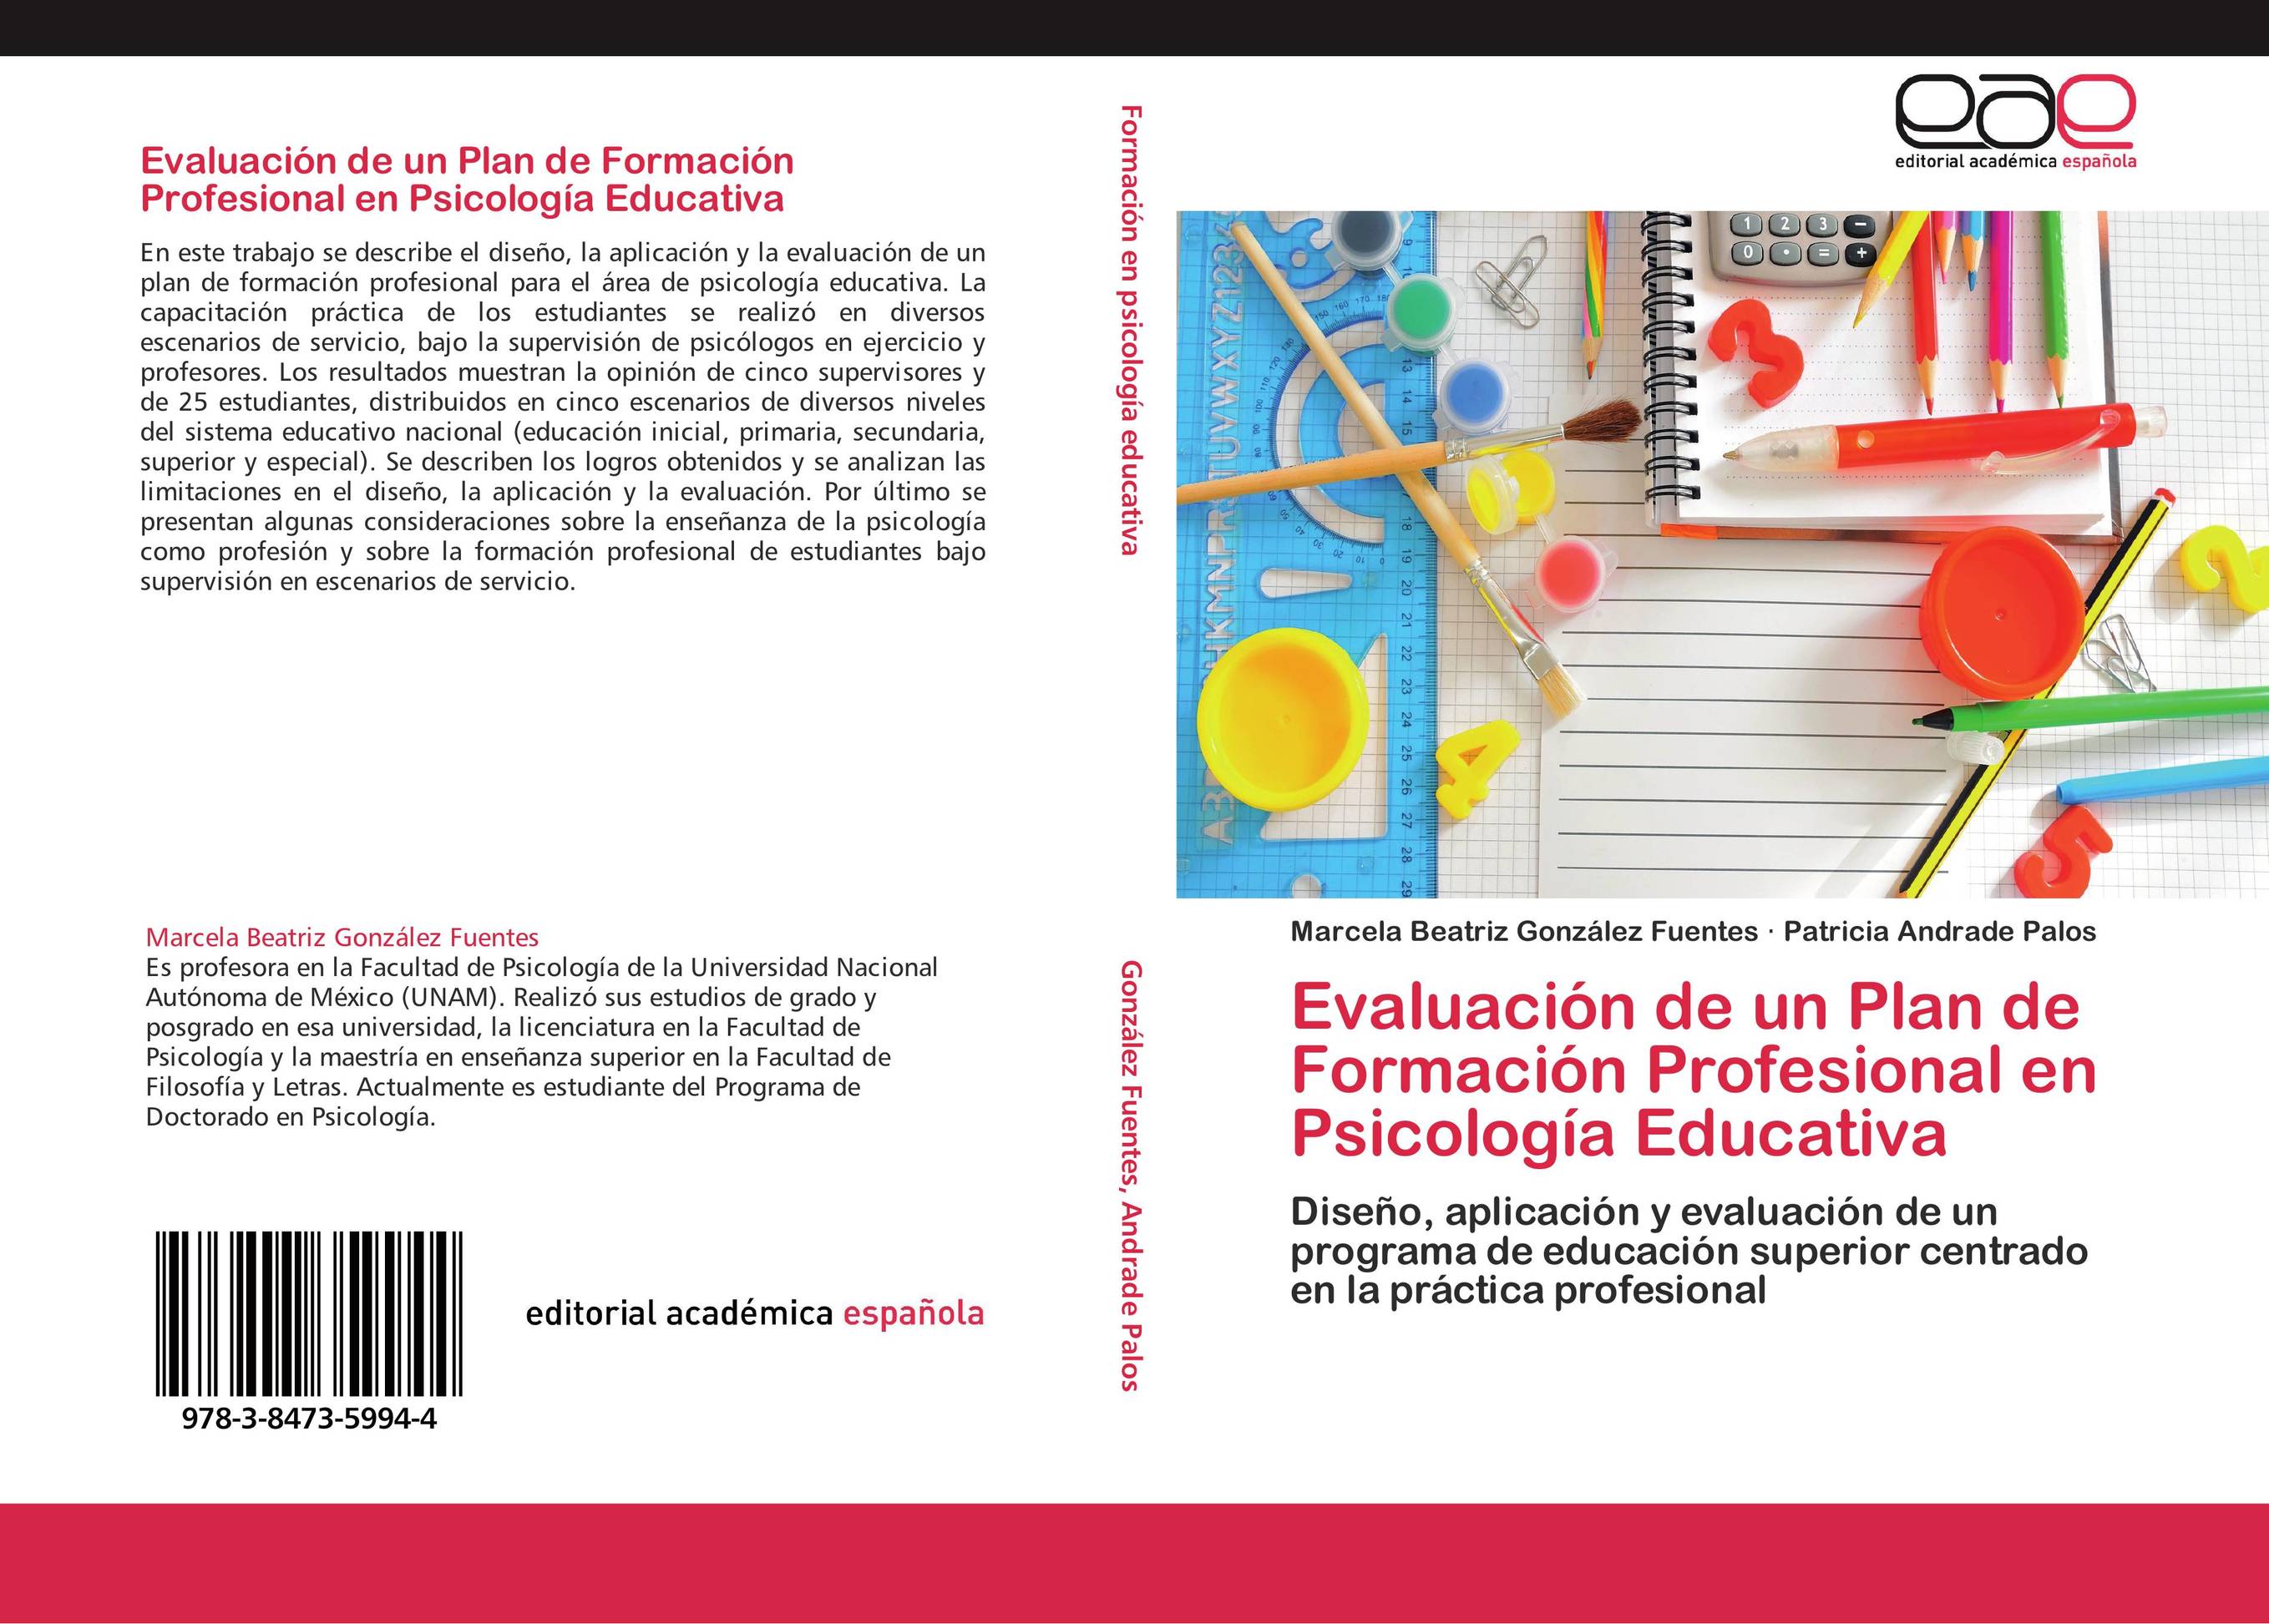 Evaluación de un Plan de Formación Profesional en Psicología Educativa